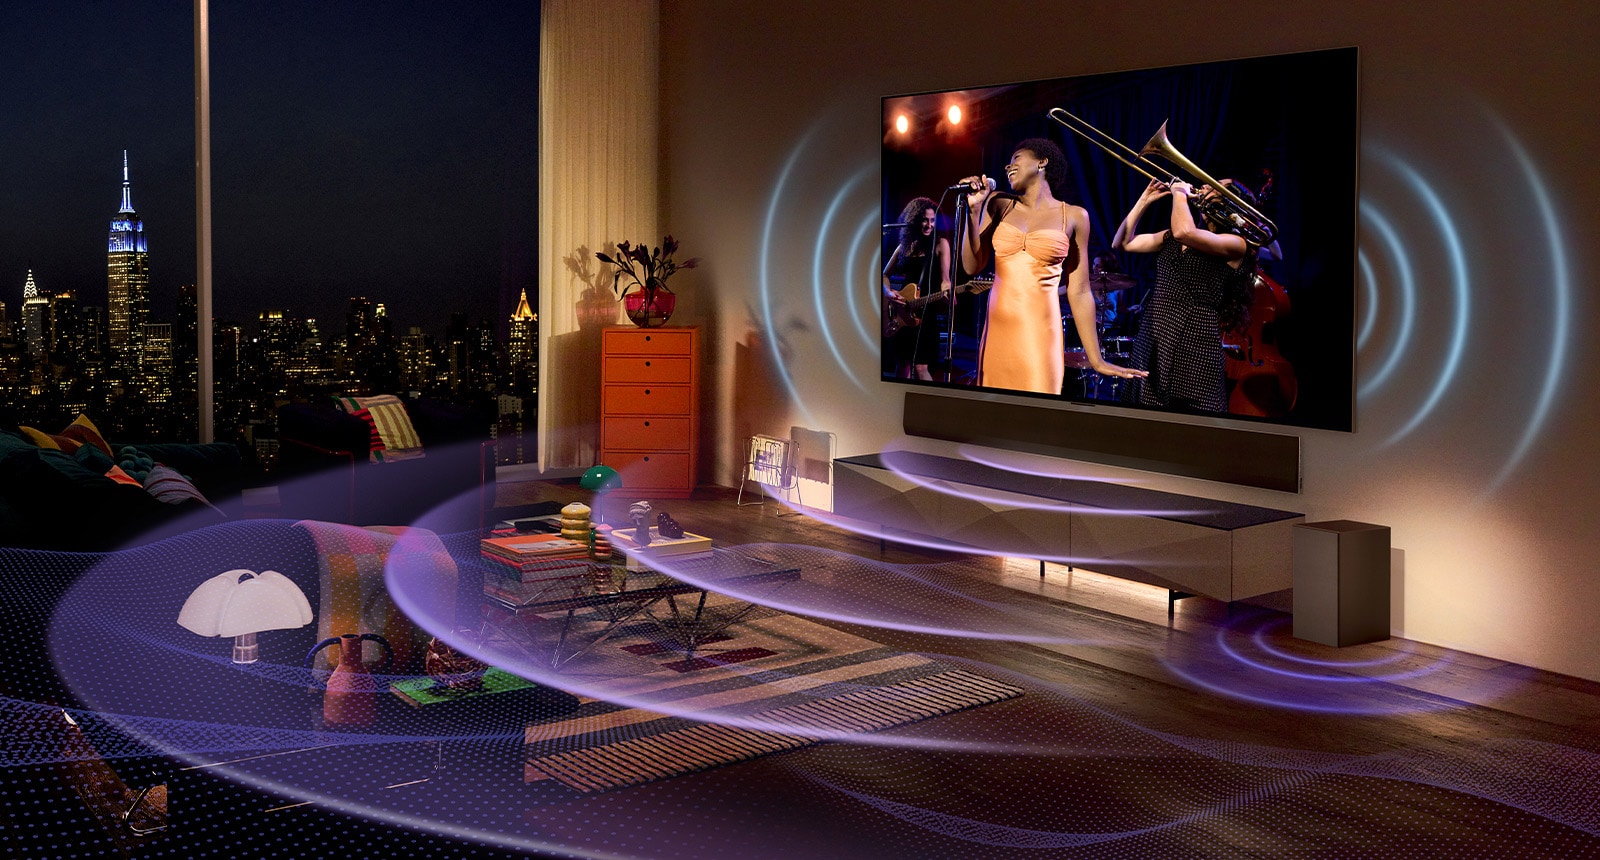 Pogled na LG OLED TV, ki prikazuje glasbeni koncert v sobi.  Prostor je napolnjen z modrimi ukrivljenimi črtami, ki predstavljajo zvok televizorja, in vijoličnimi ukrivljenimi črtami, ki predstavljajo zvok Soundbar.